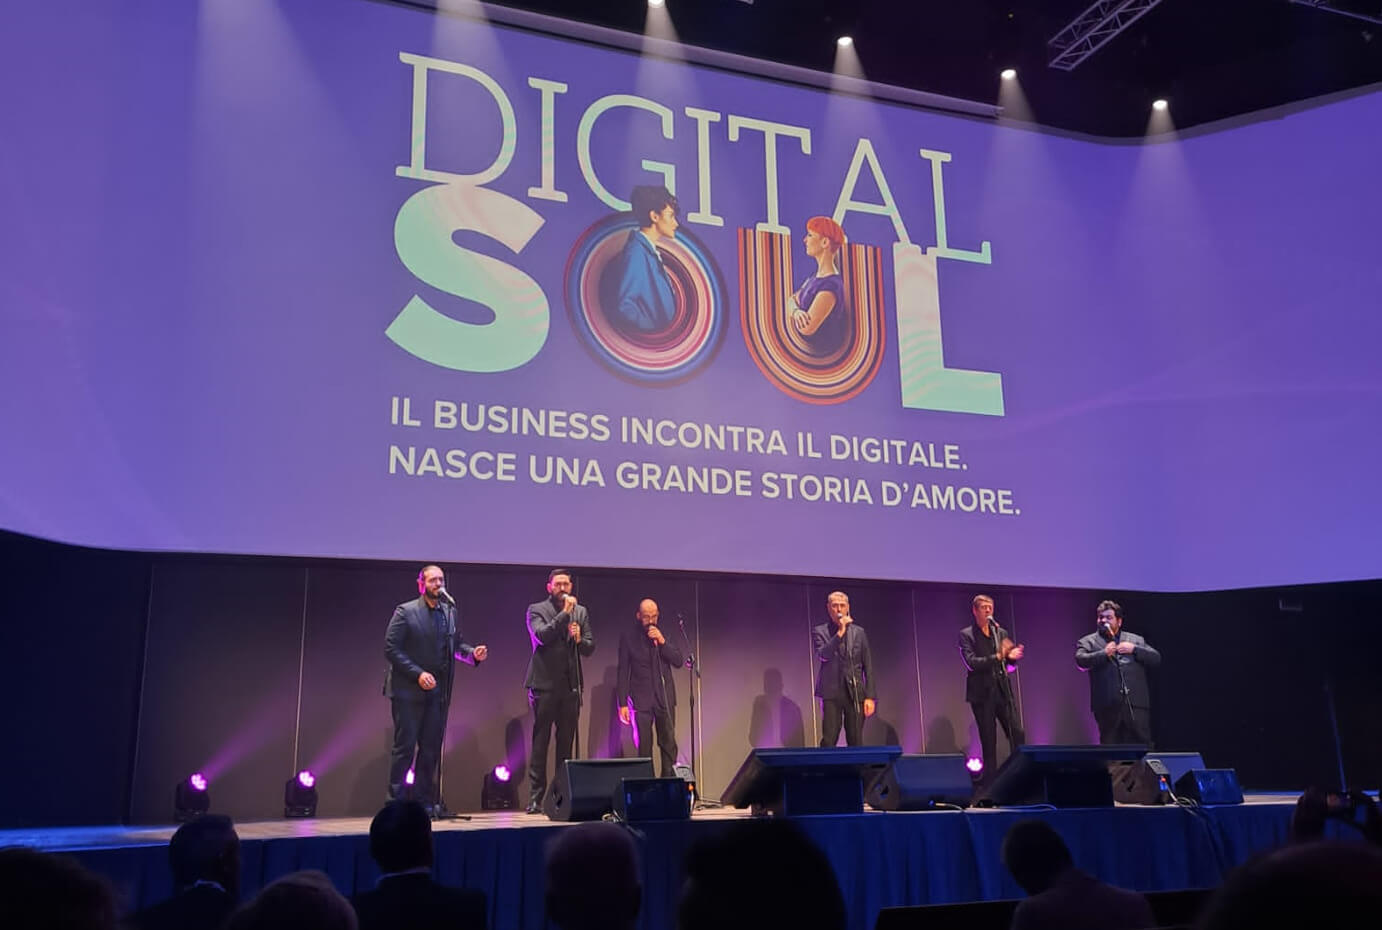 digital soul